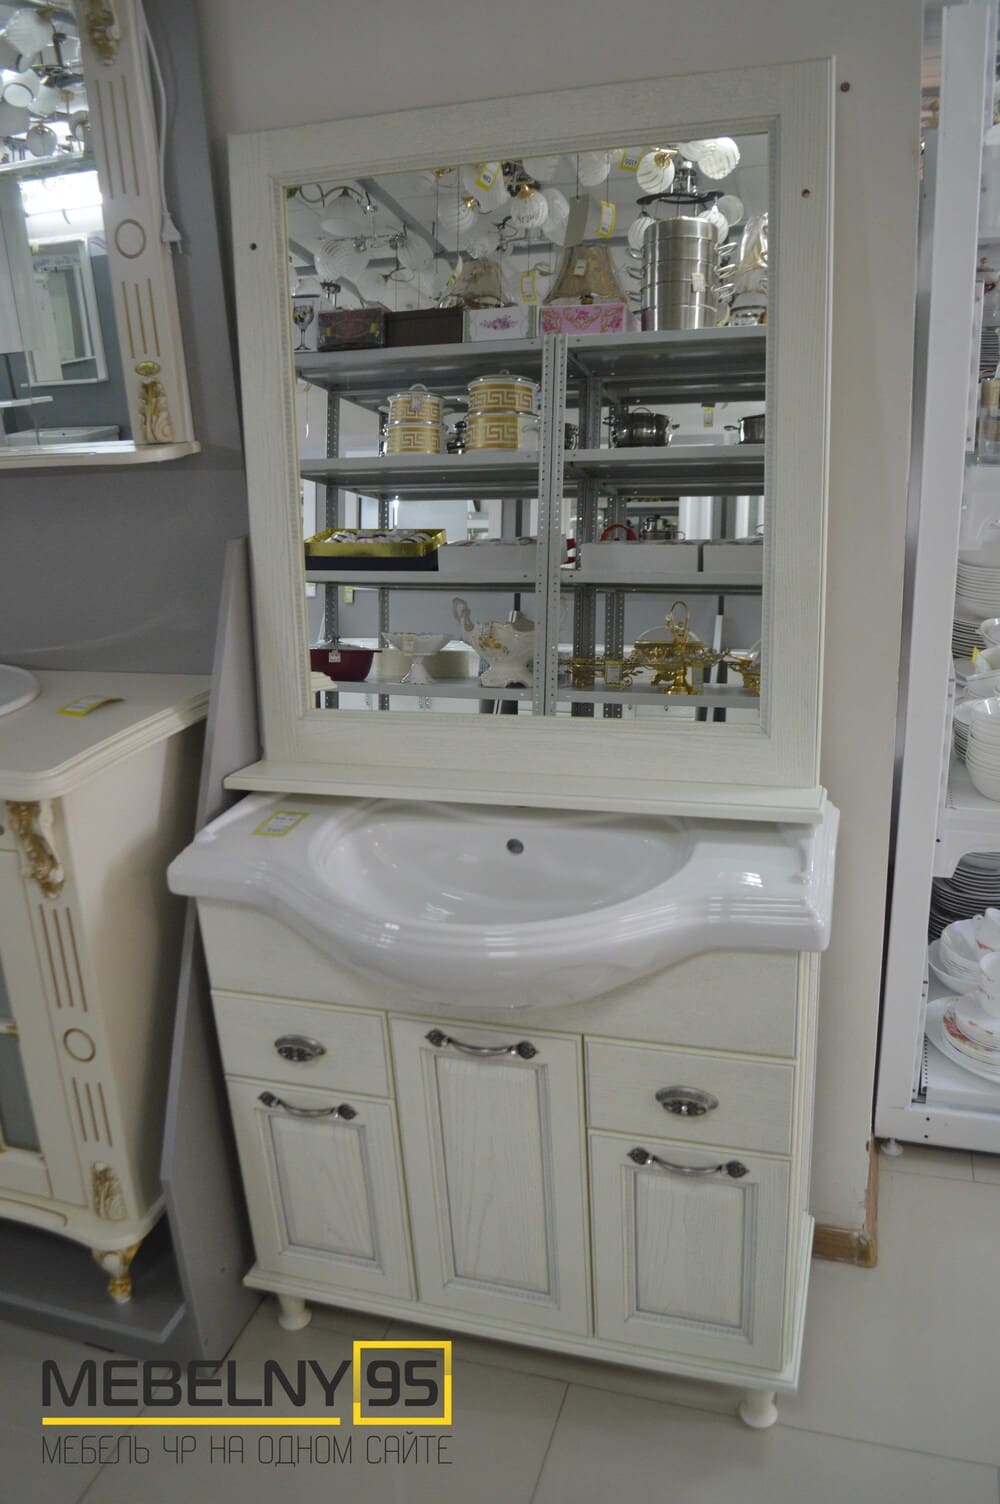 Комплекты ванной мебели - изображение №1 на mebelny95.ru